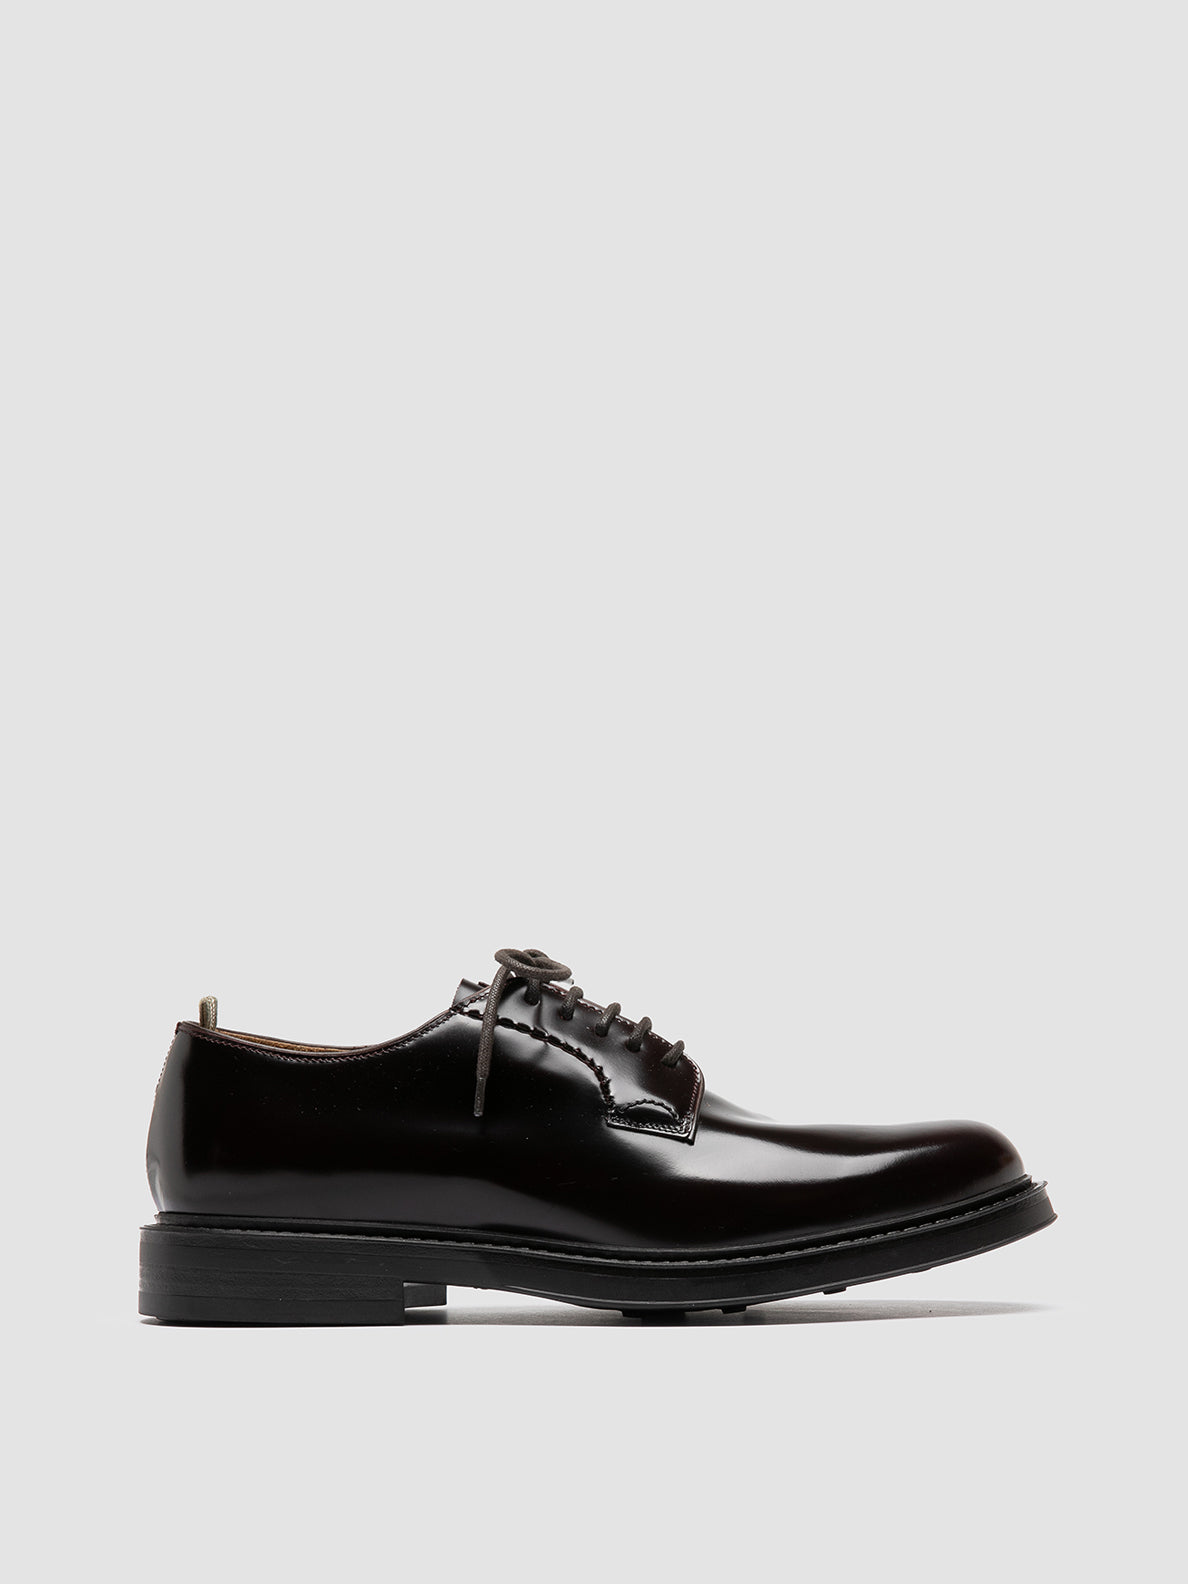 Men's Burgundy Leather Derby Shoes: UNIFORM 003 – Officine Creative EU